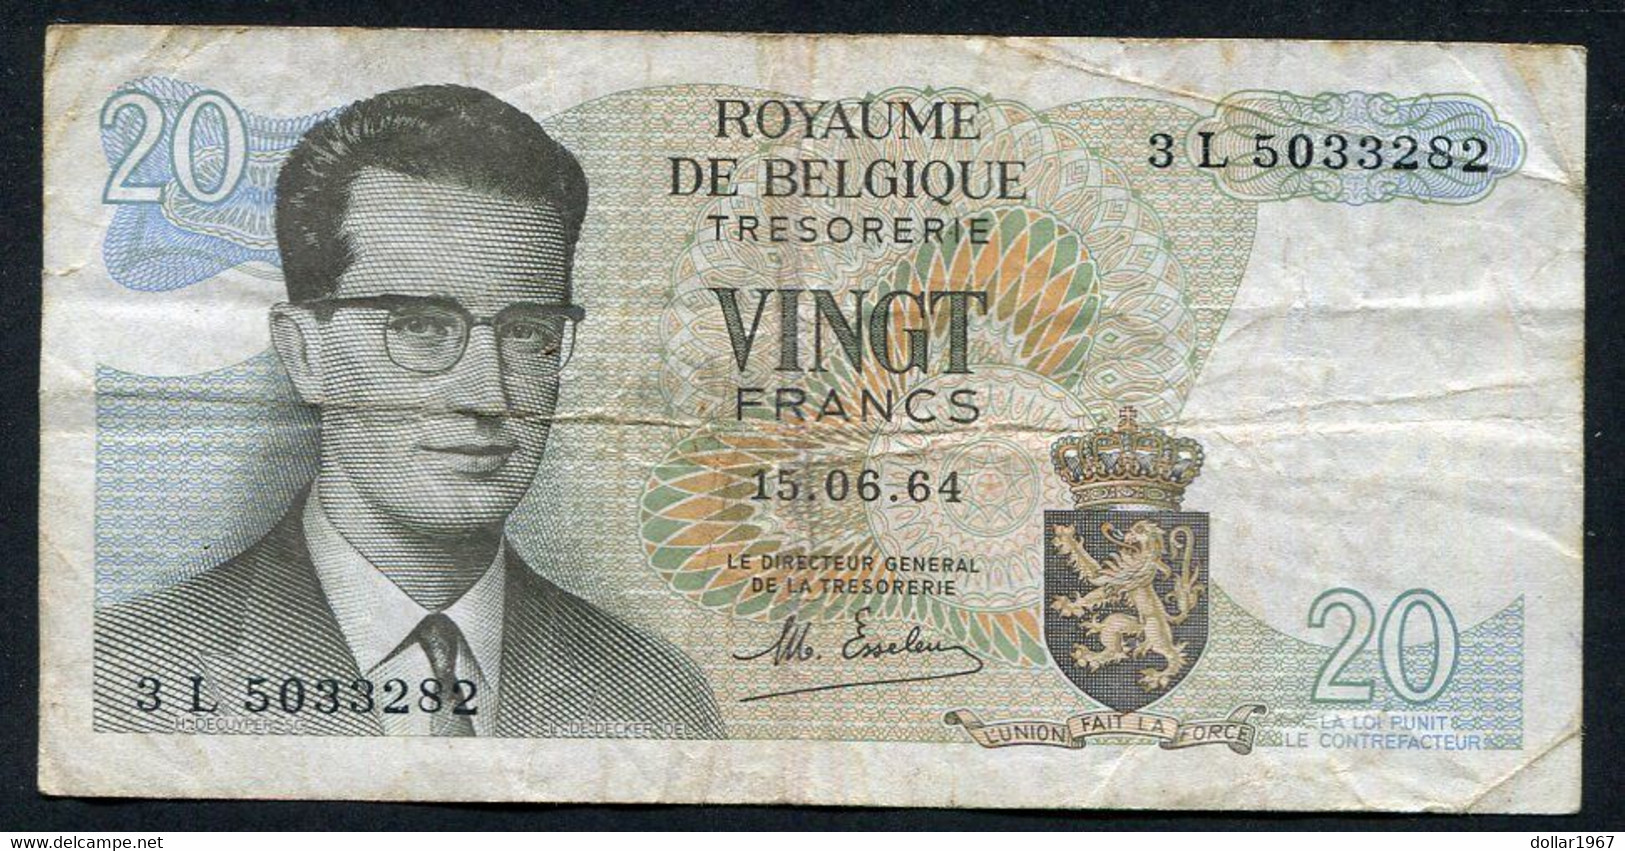 België Belgique Belgium 15 06 1964 -  20 Francs Atomium Baudouin.  3 L 5033282 - 20 Francs